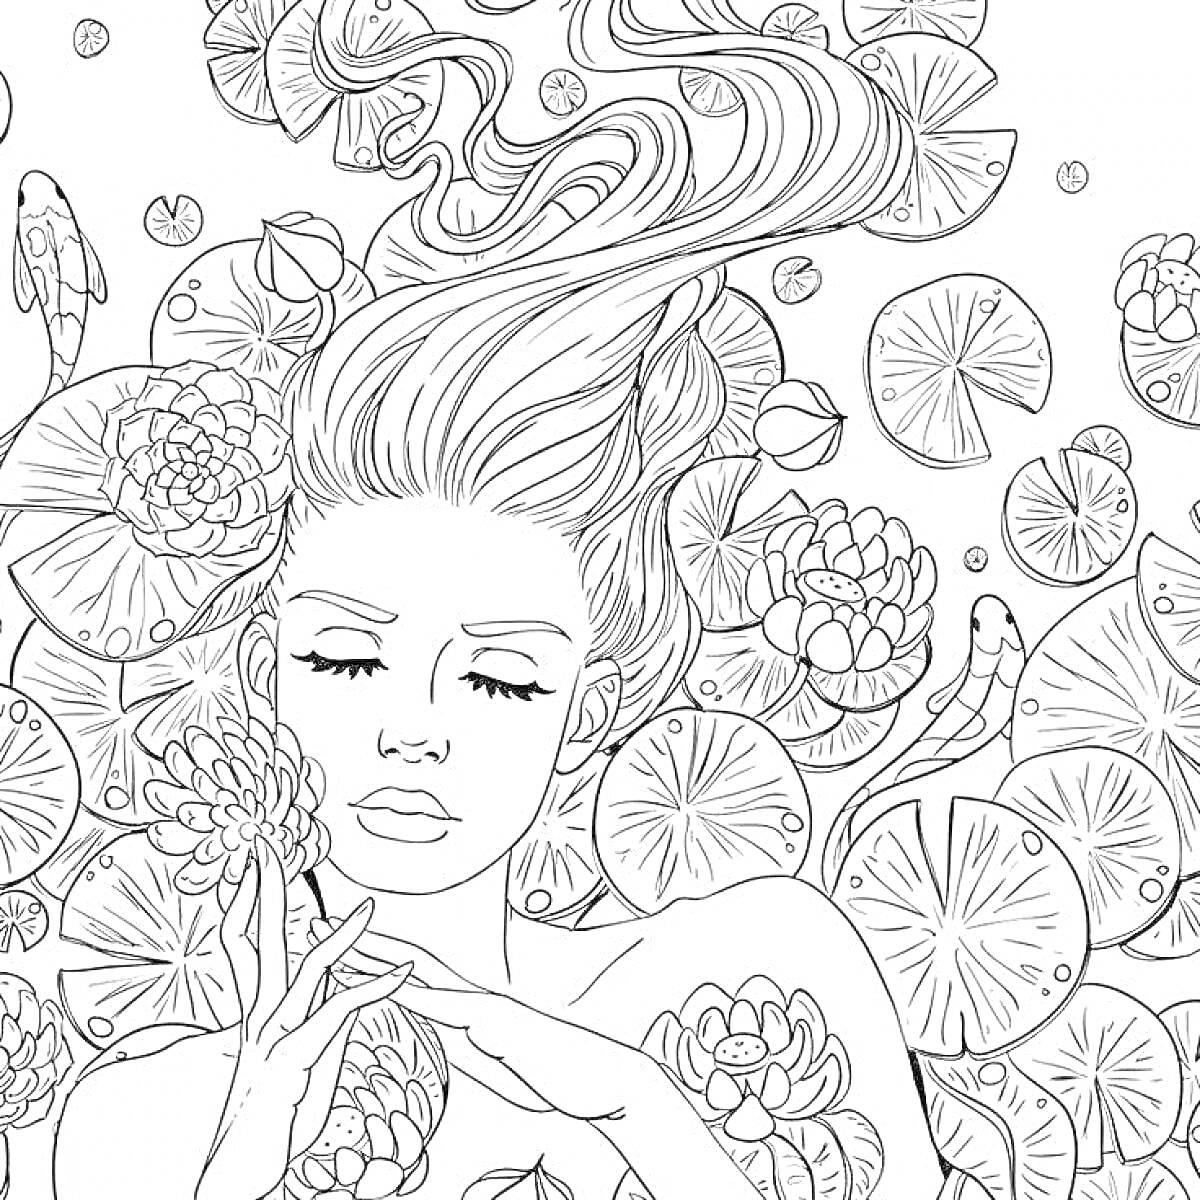 На раскраске изображено: Антистресс, Женщина, Волосы, Водяные лилии, Цветы, Природа, Спокойствие, Релакс